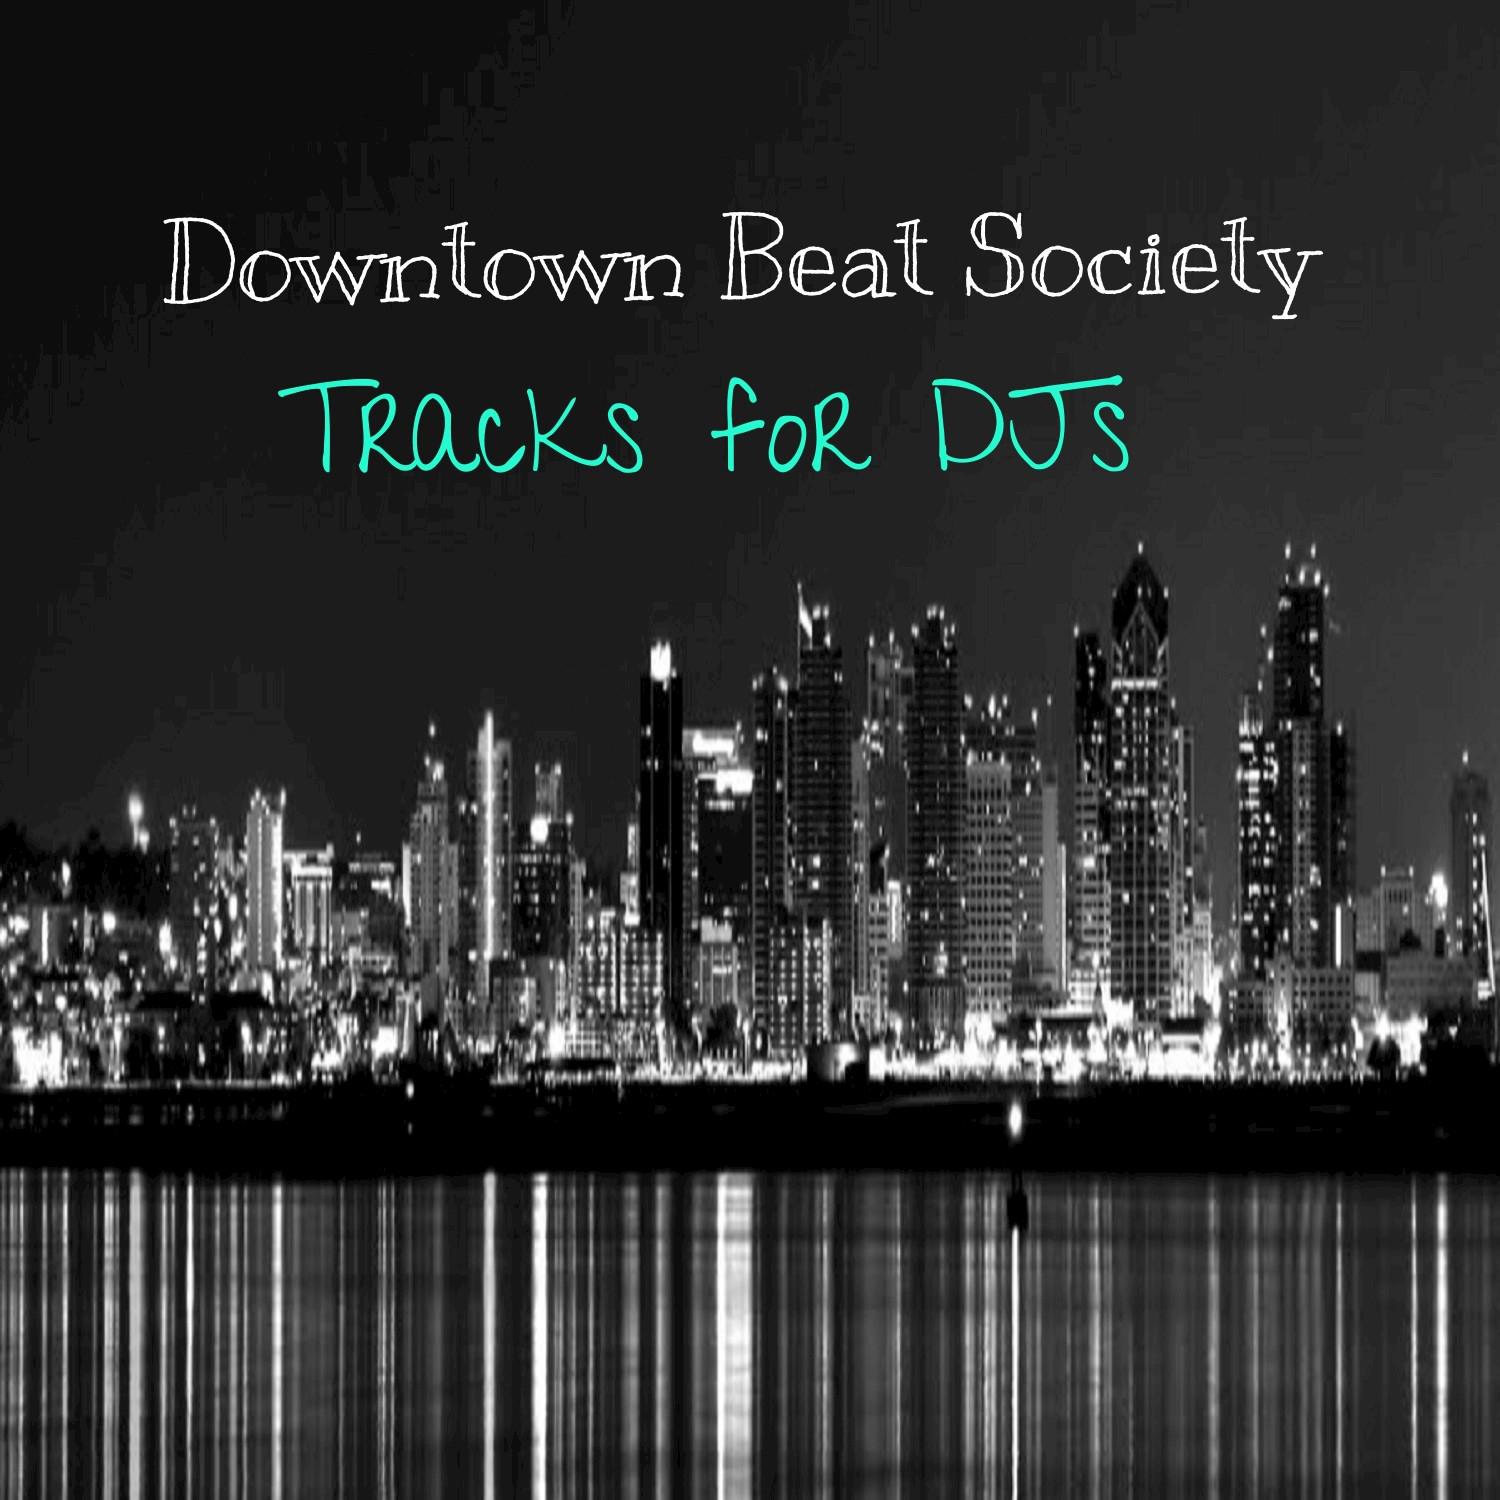 Tracks for DJs